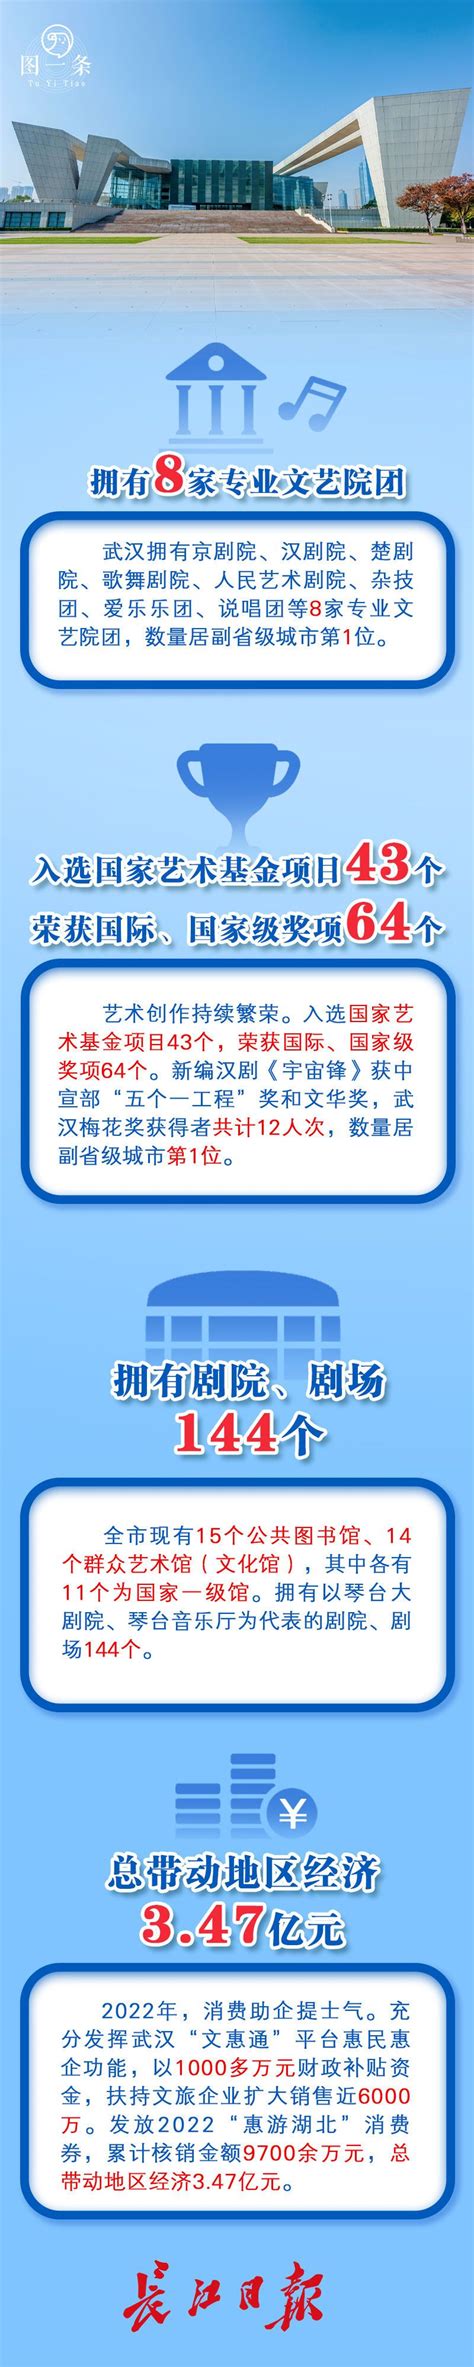 武汉市文化和旅游局(网上办事大厅)